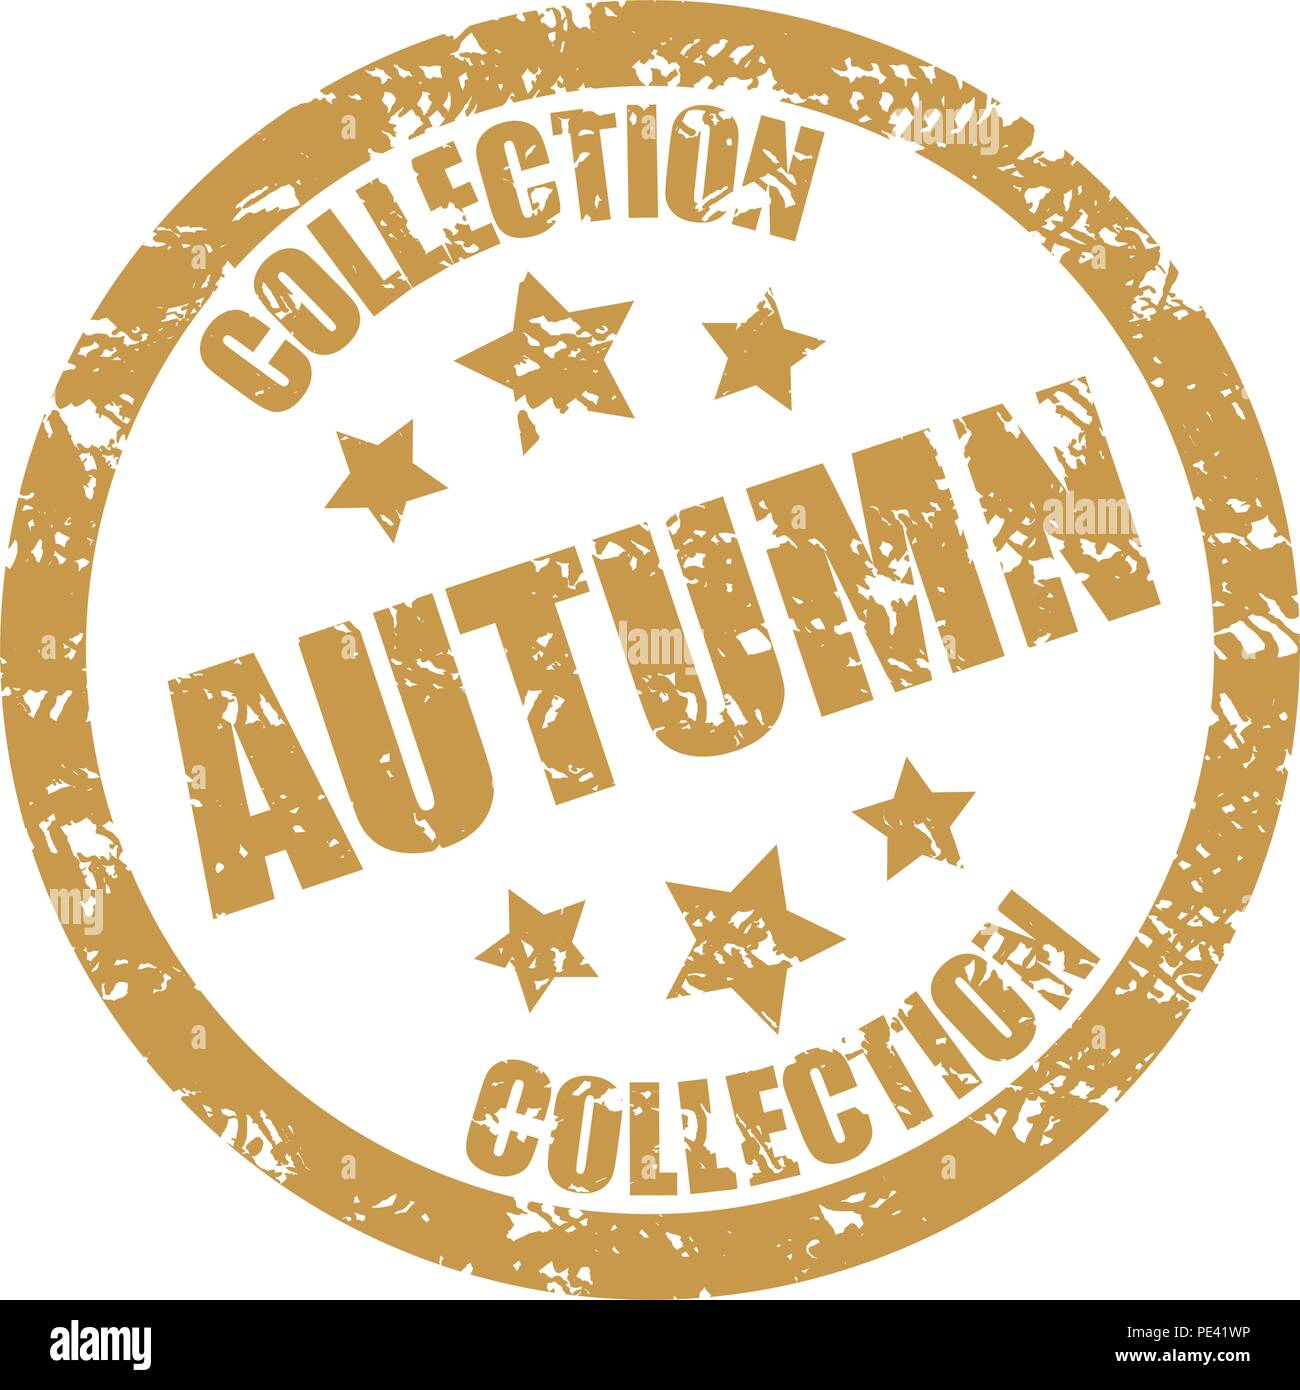 Herbst collection Stempel zum Verkauf und Jahreszeit Rabatt. Vektor grunge Stempel, verwitterte insignia Abbildung Stock Vektor